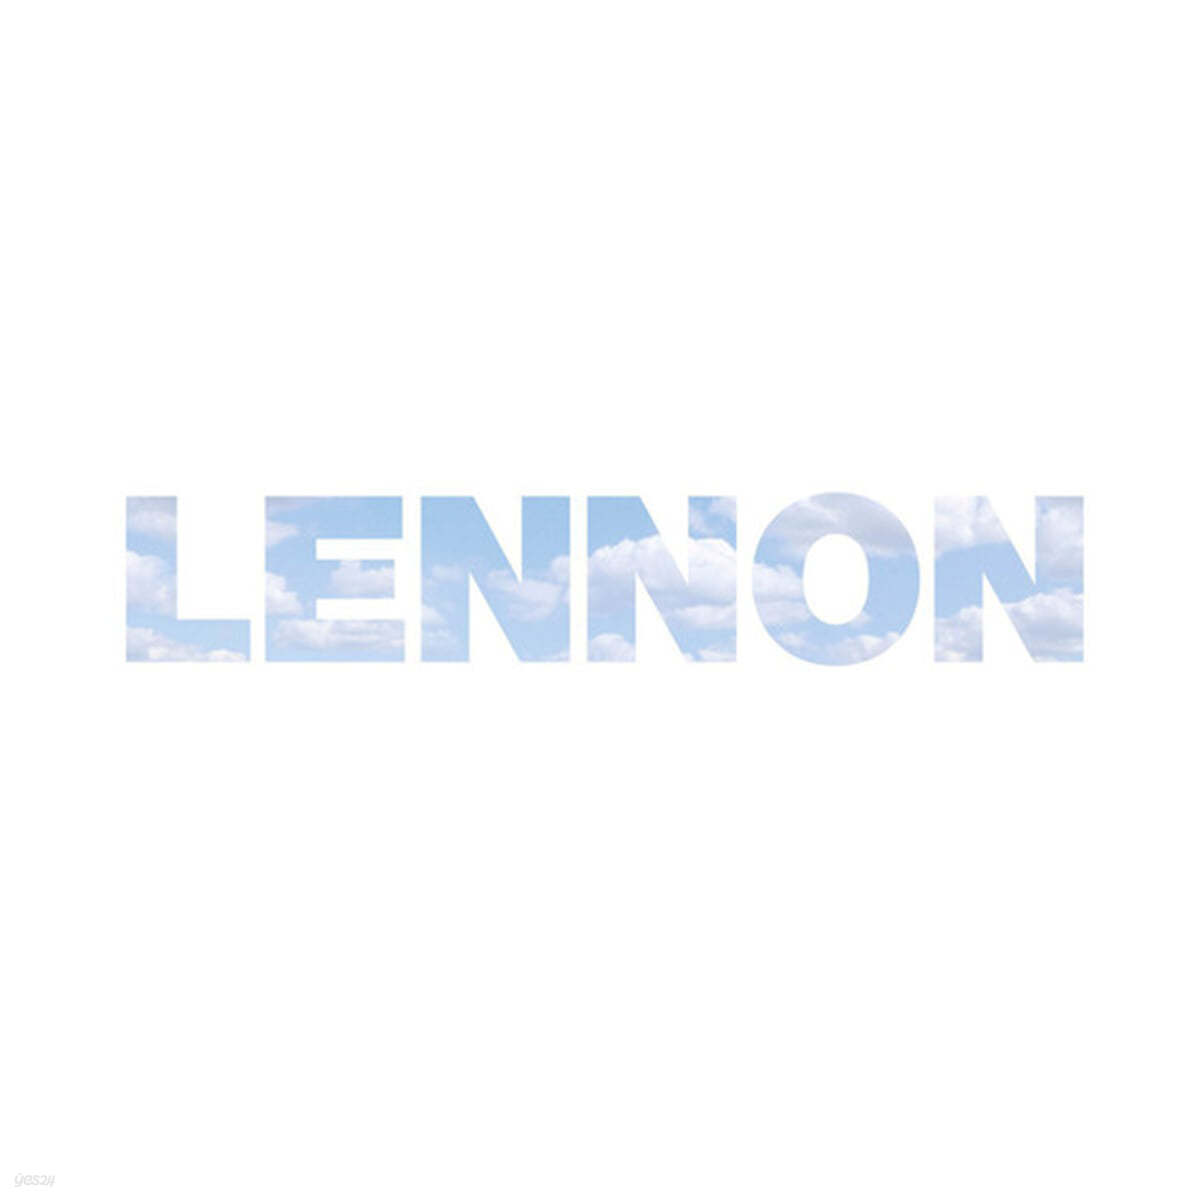 John Lennon (존 레논) - Lennon [9LP]